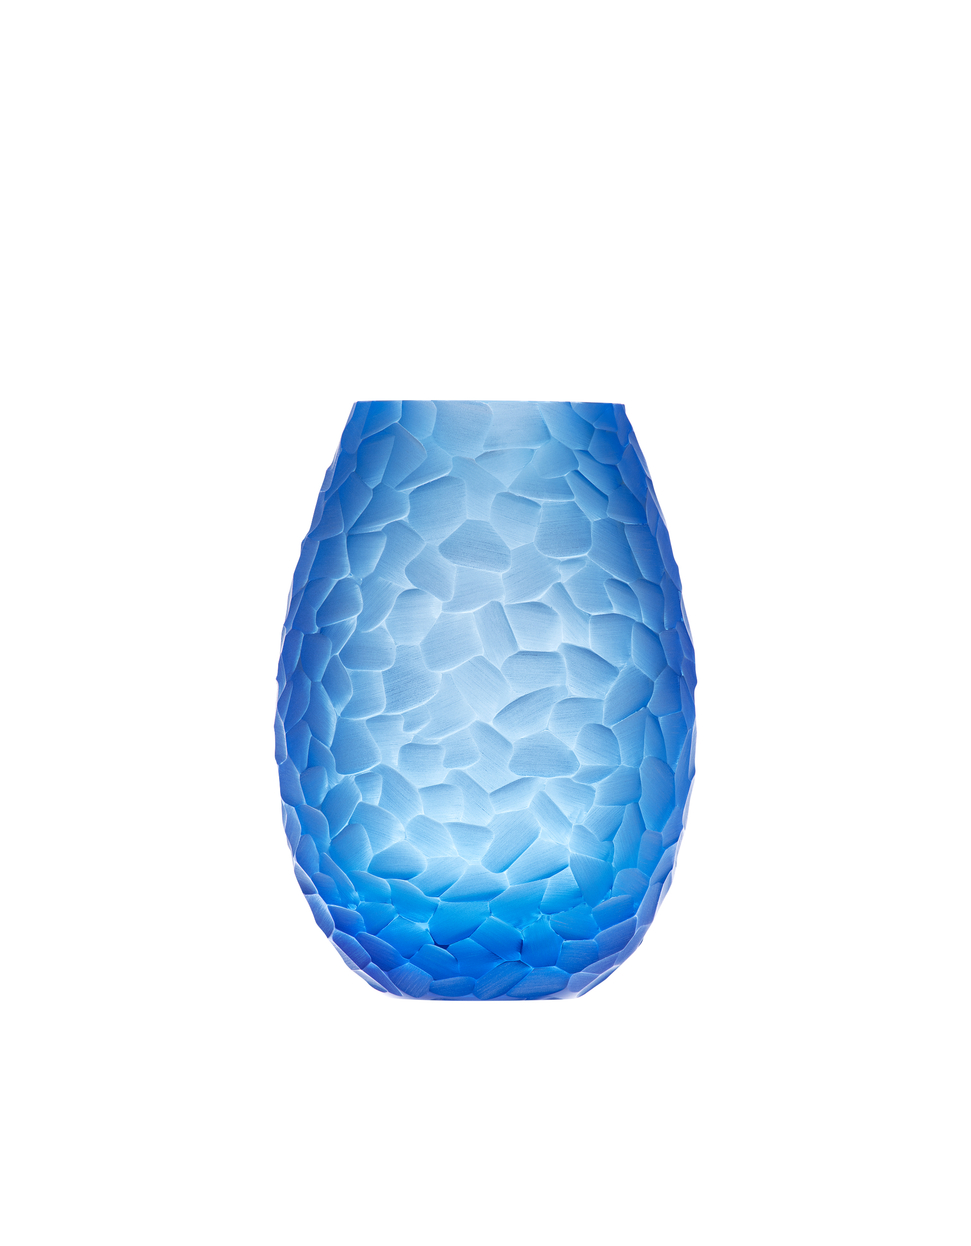 Arktik váza, 21 cm